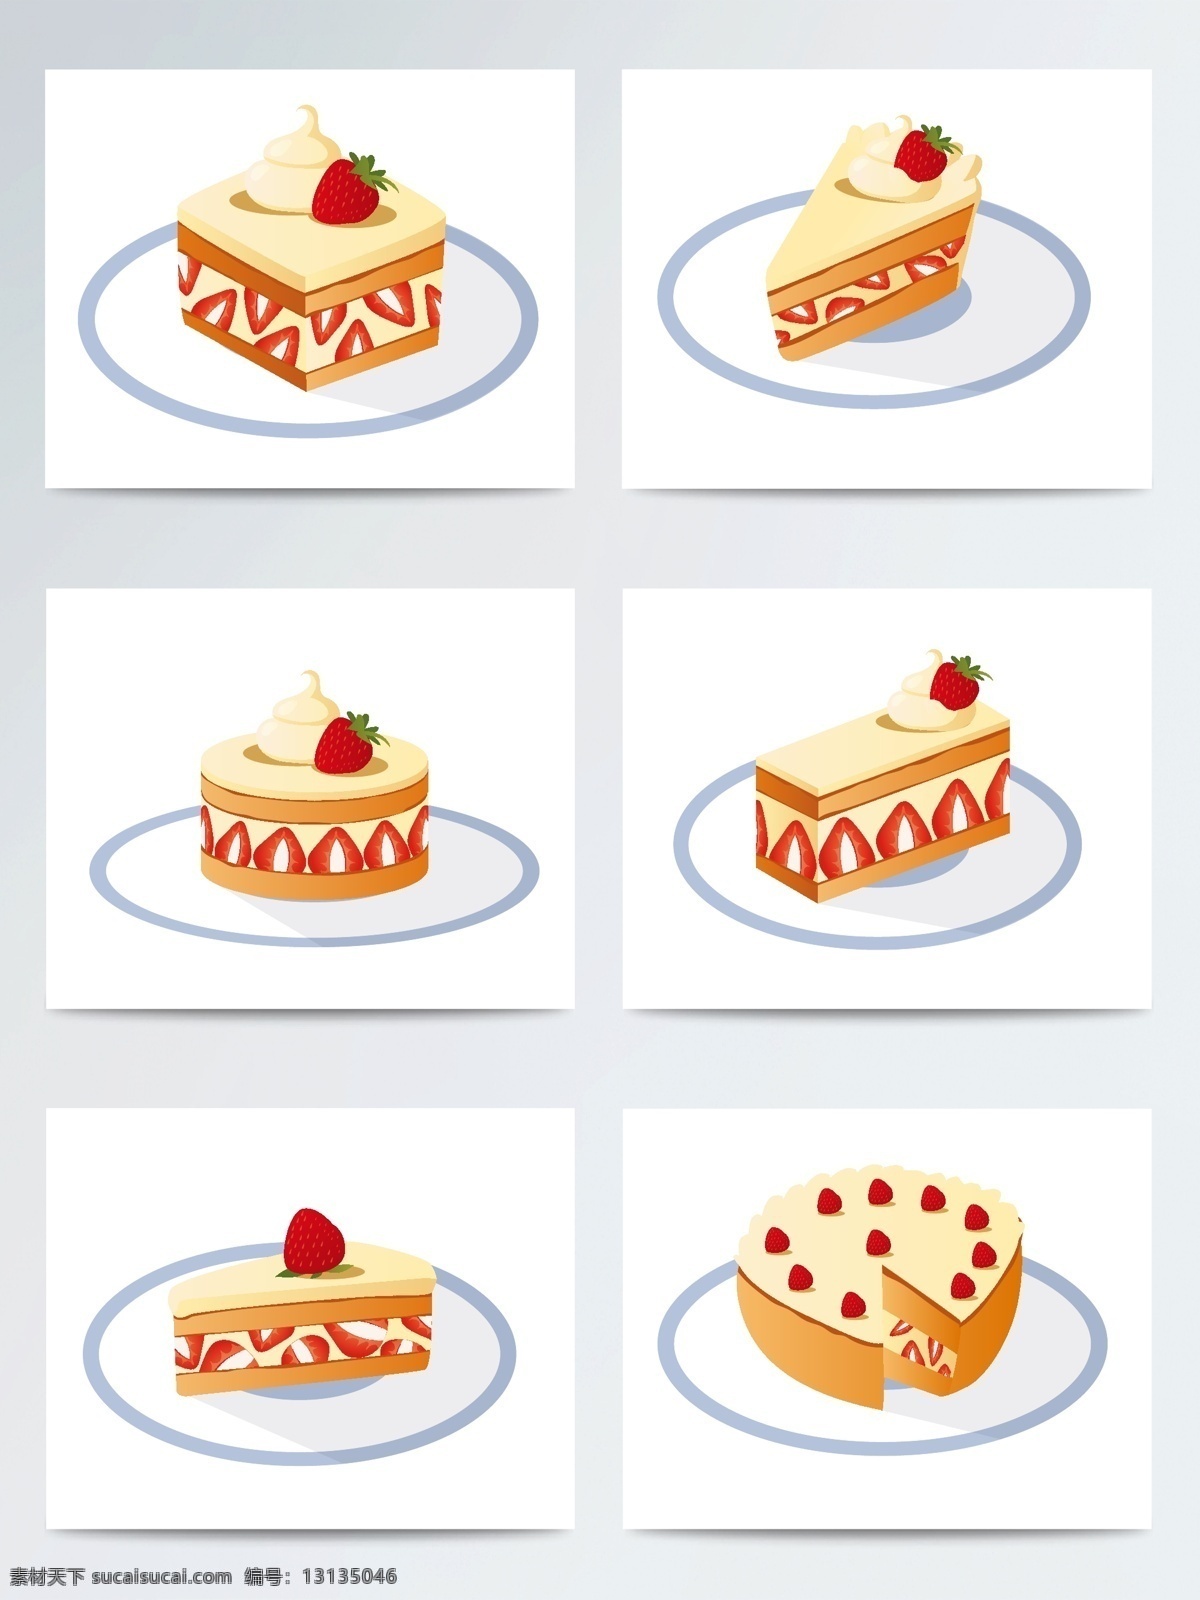 手绘 草莓 蛋糕 矢量 矢量素材 食物 甜品 手绘蛋糕 ai素材 手绘插画 手绘甜品 甜点 草莓蛋糕